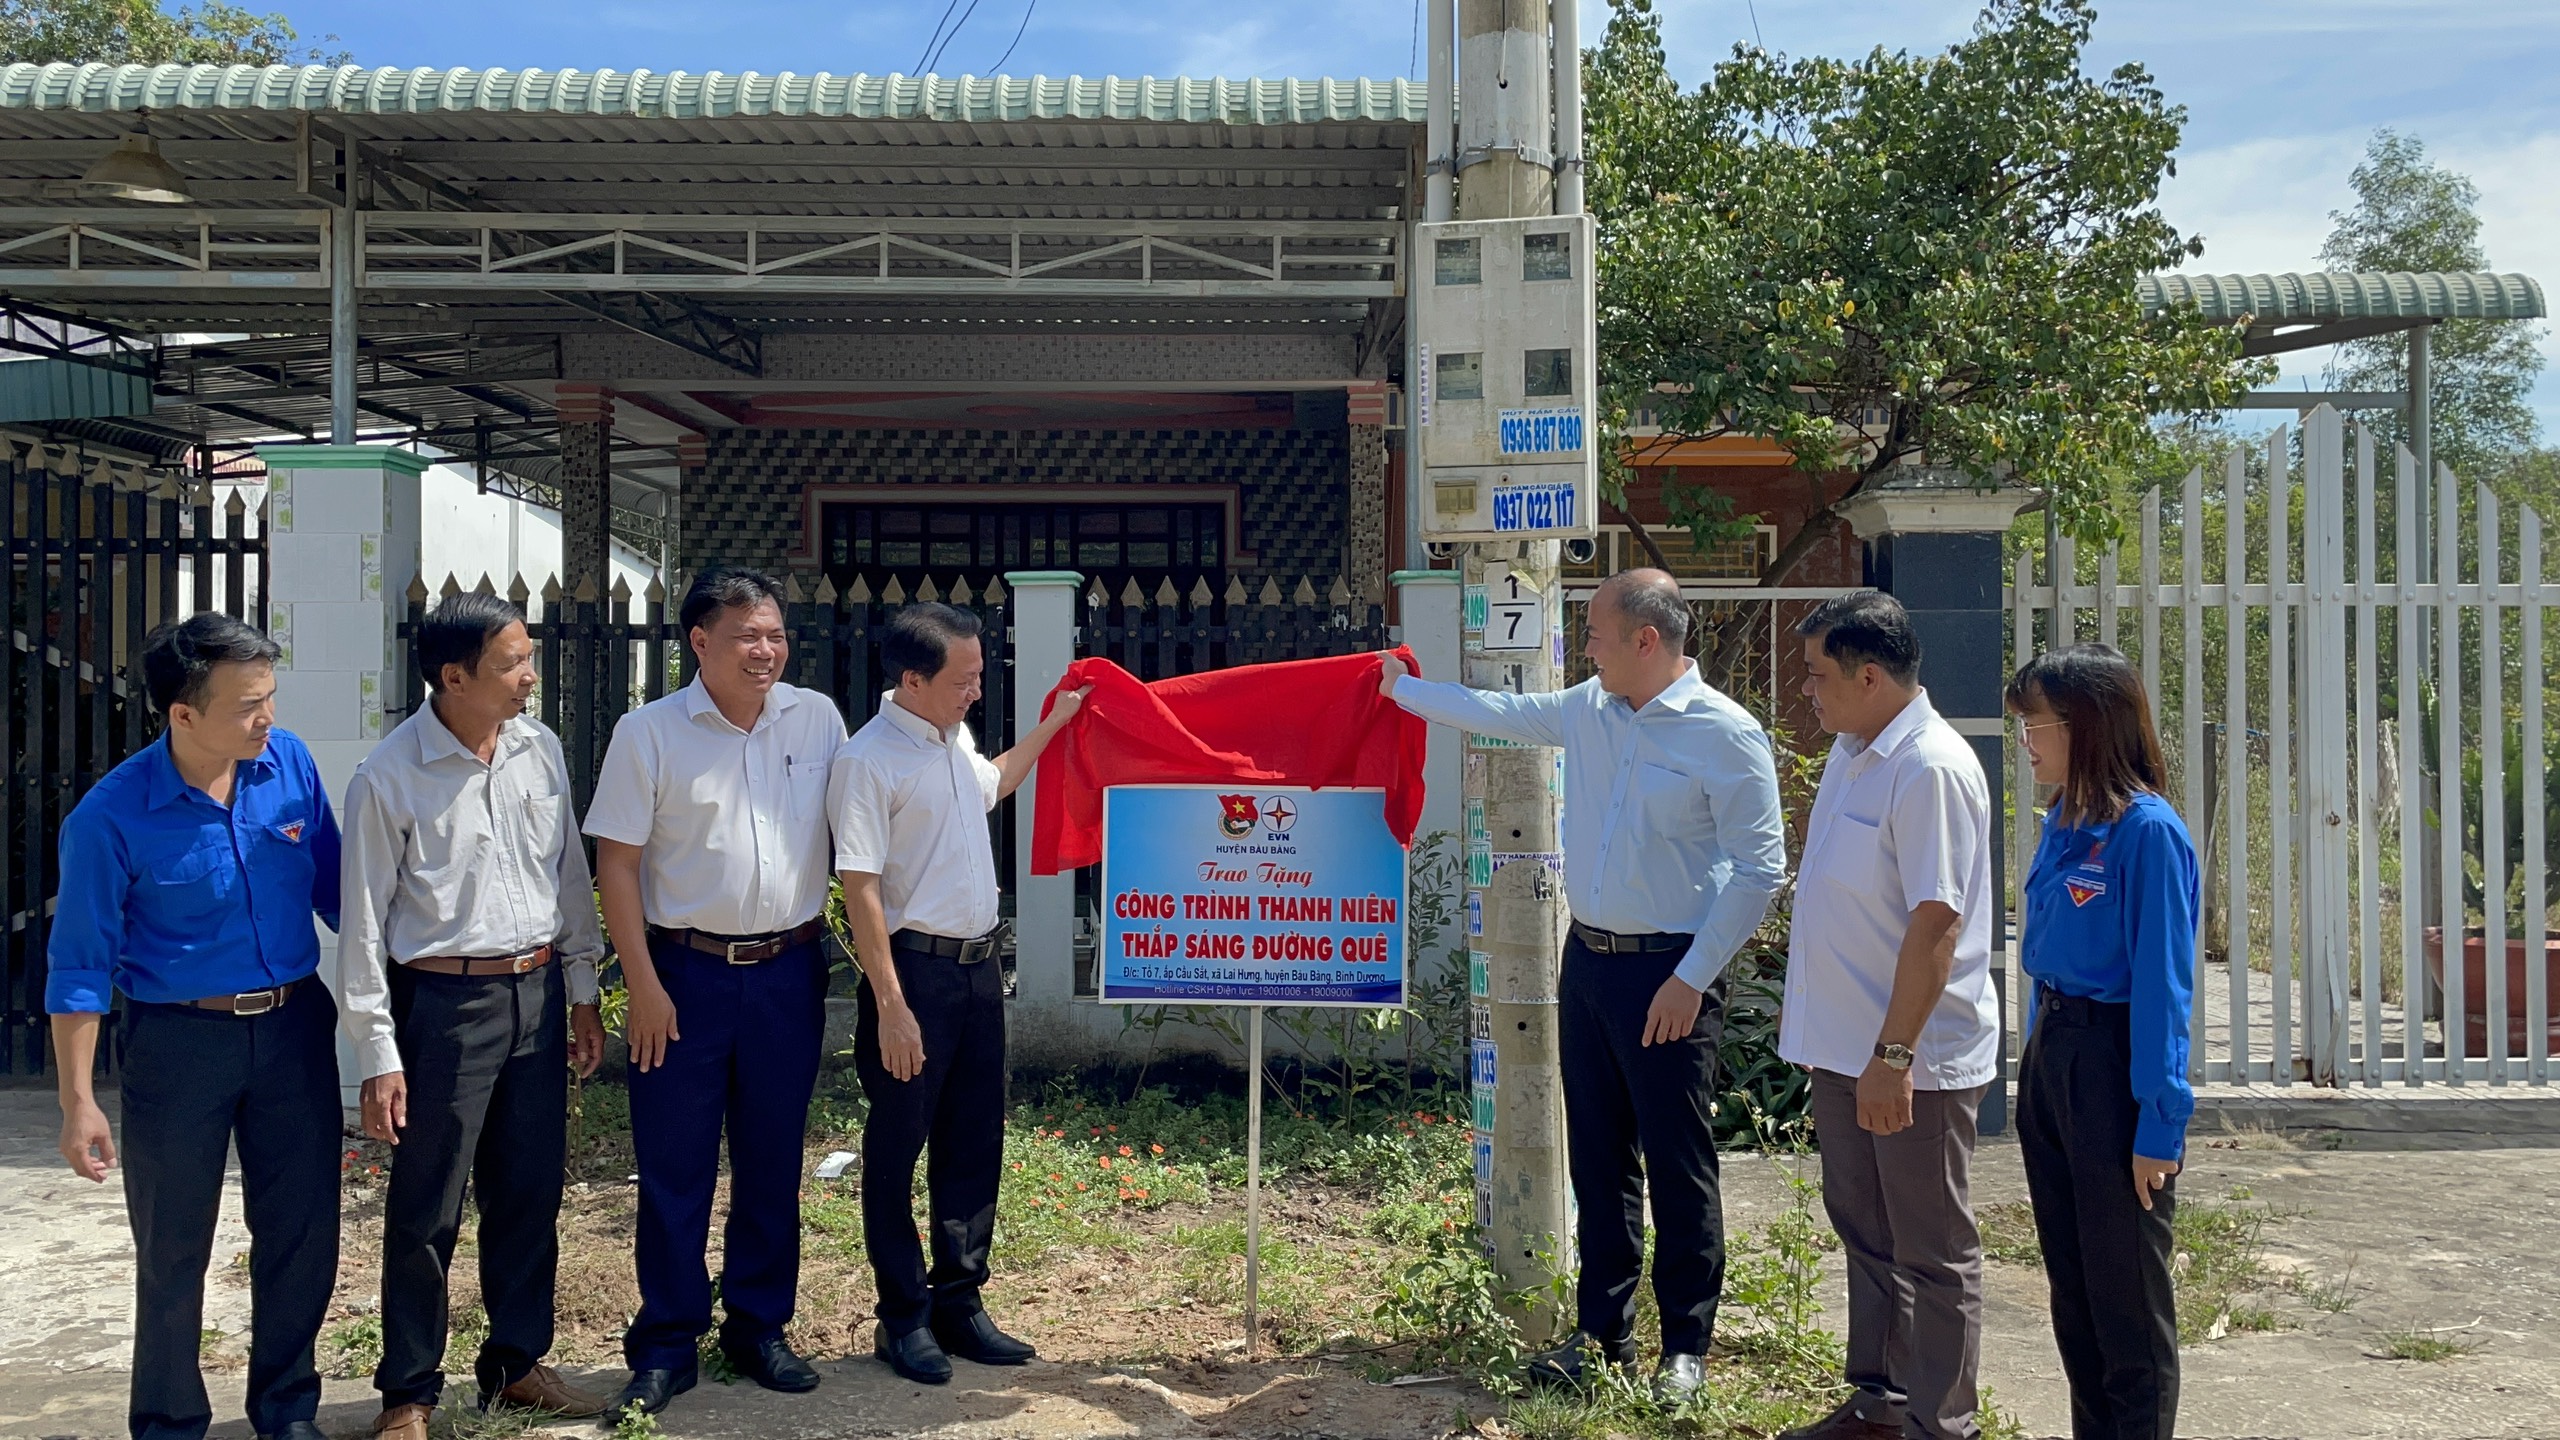 Huyện đoàn phối hợp Điện lực Bàu Bàng trao tặng công trình thanh niên “thắp sáng đường quê”.